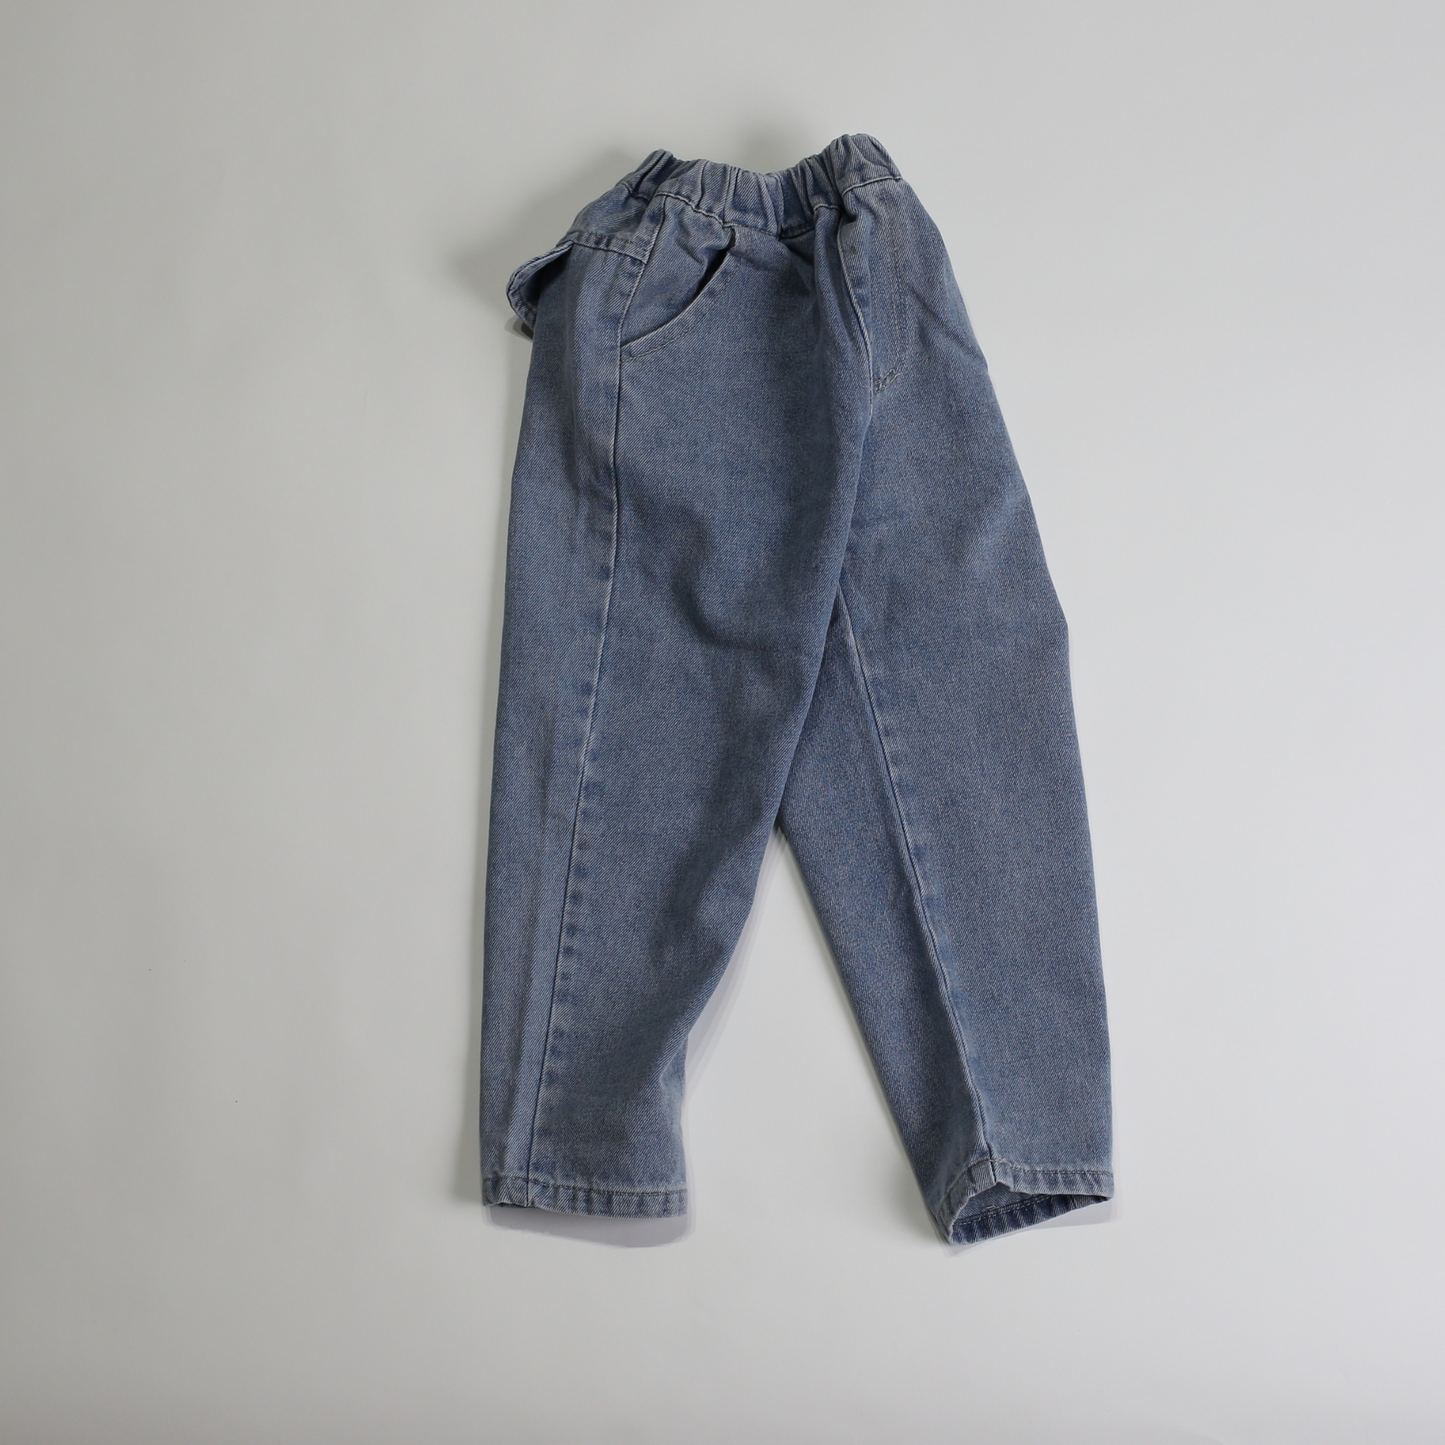 バックポケット付 デニムパンツ / back pocket long denim (こども服) - kids clothes shop GUZUGUZU